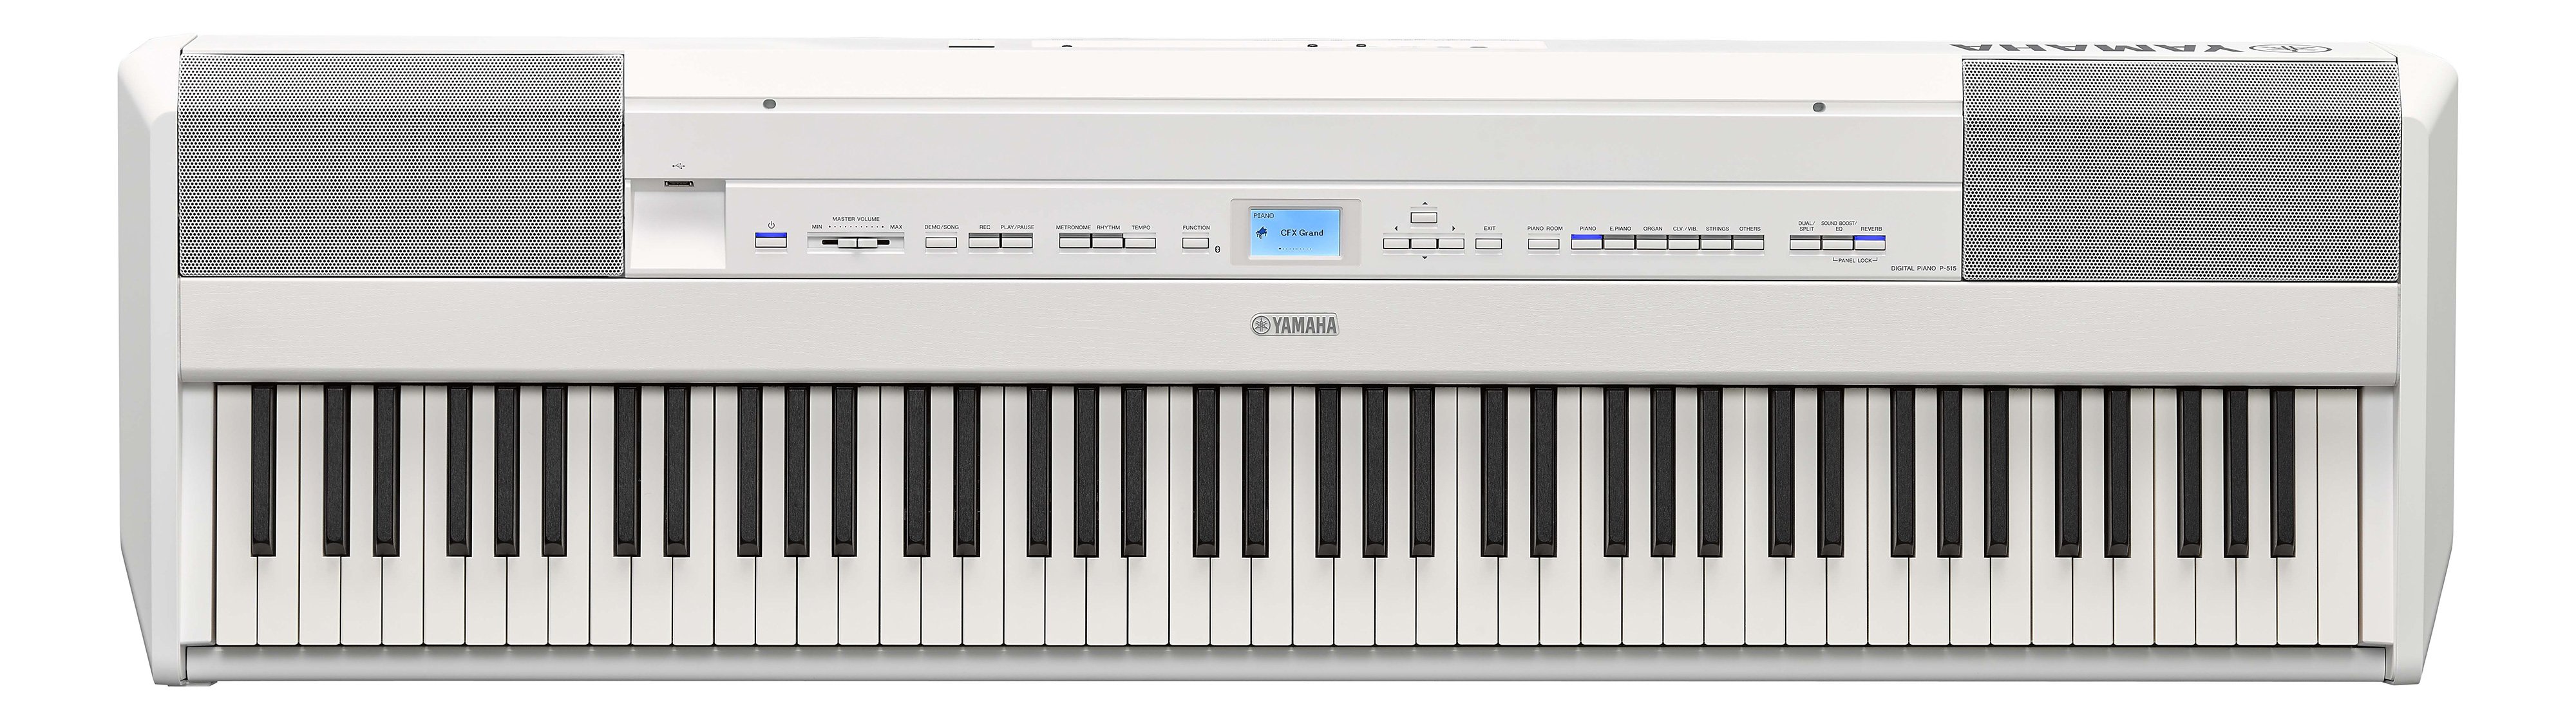 ヤマハ電子ピアノP-515Bおよびオプション類一式です。 - 楽器/器材